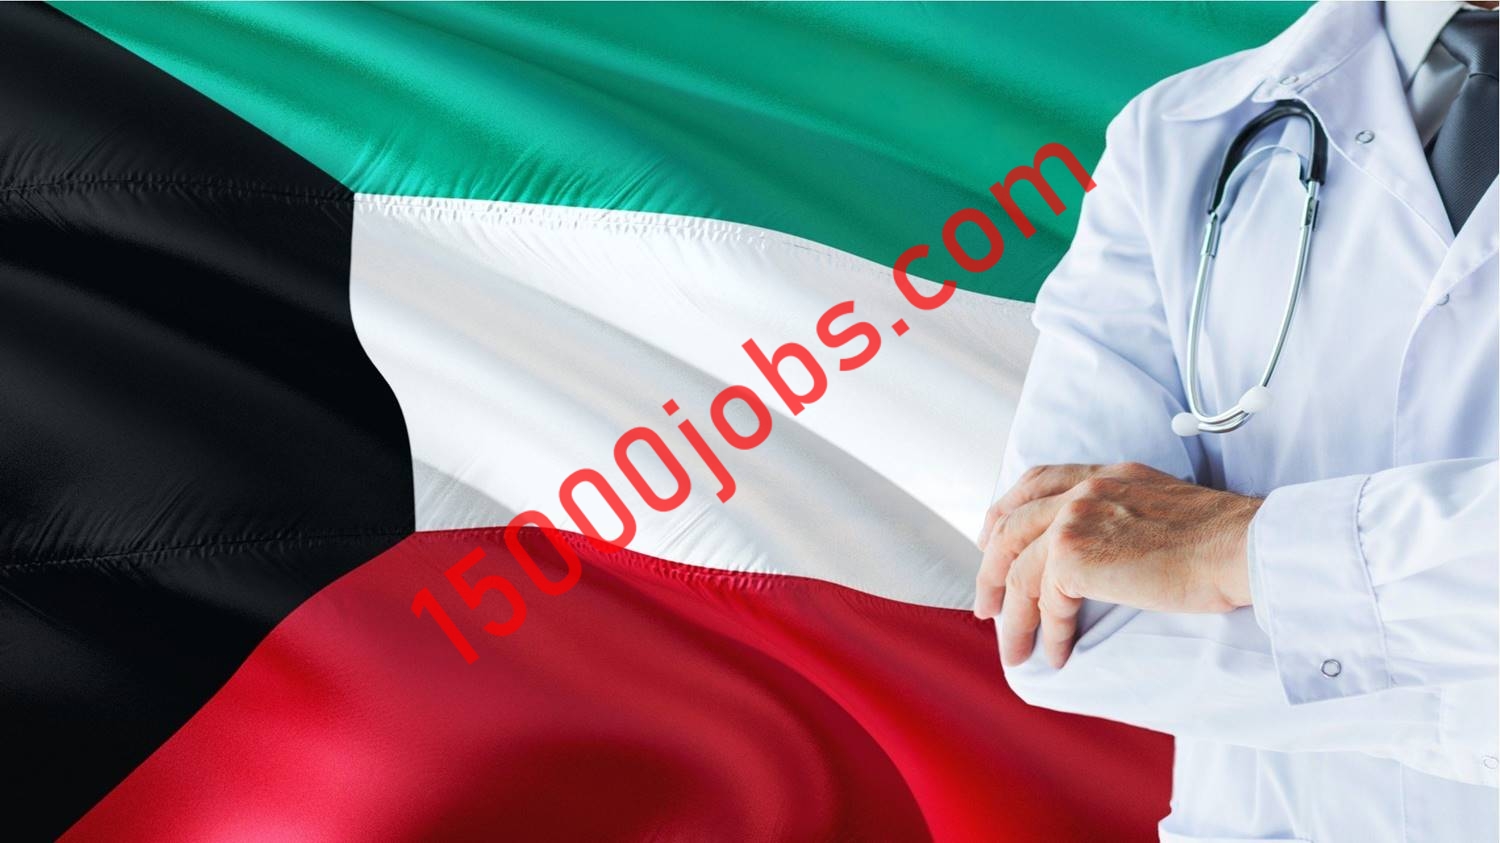 وظائف شاغرة في عيادة طبي كبري بالكويت لمختلف التخصصات